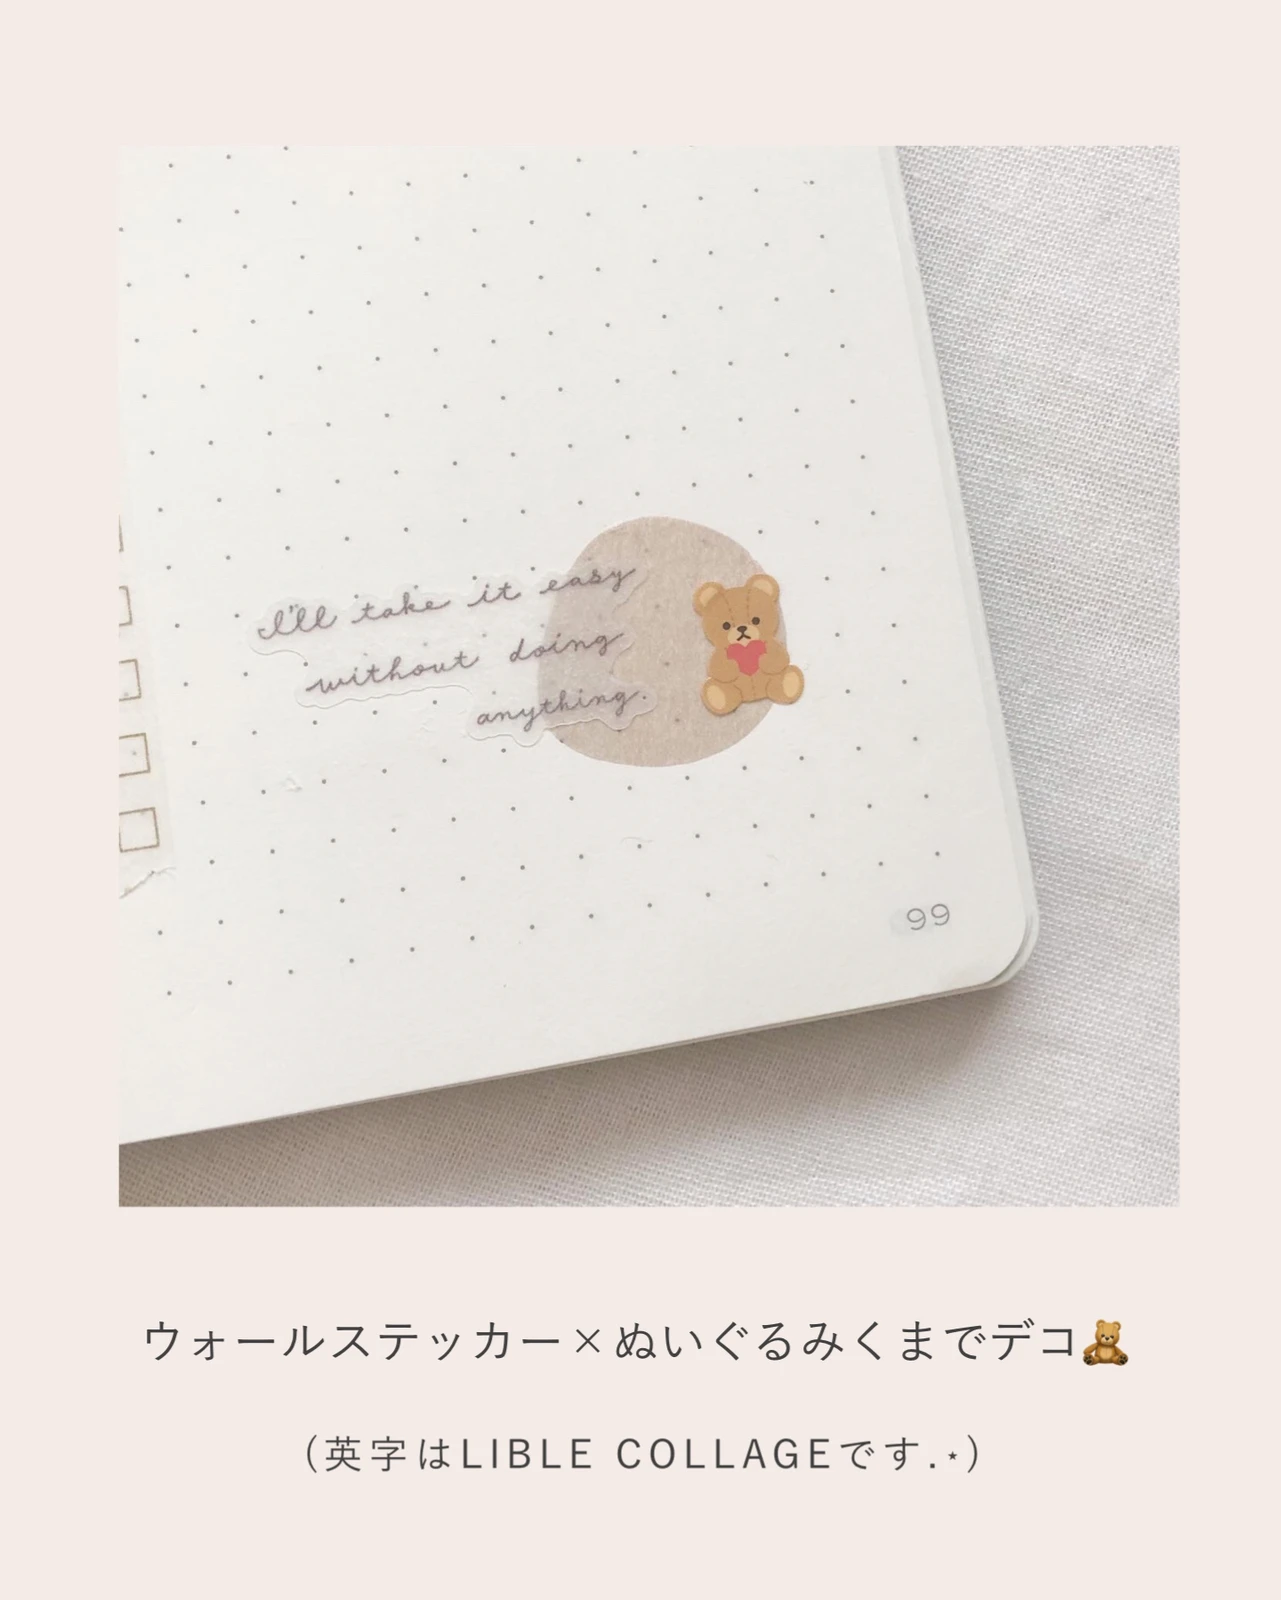 セリア 韓国風 くすみカラーの手帳アイテム Noiが投稿したフォトブック Lemon8